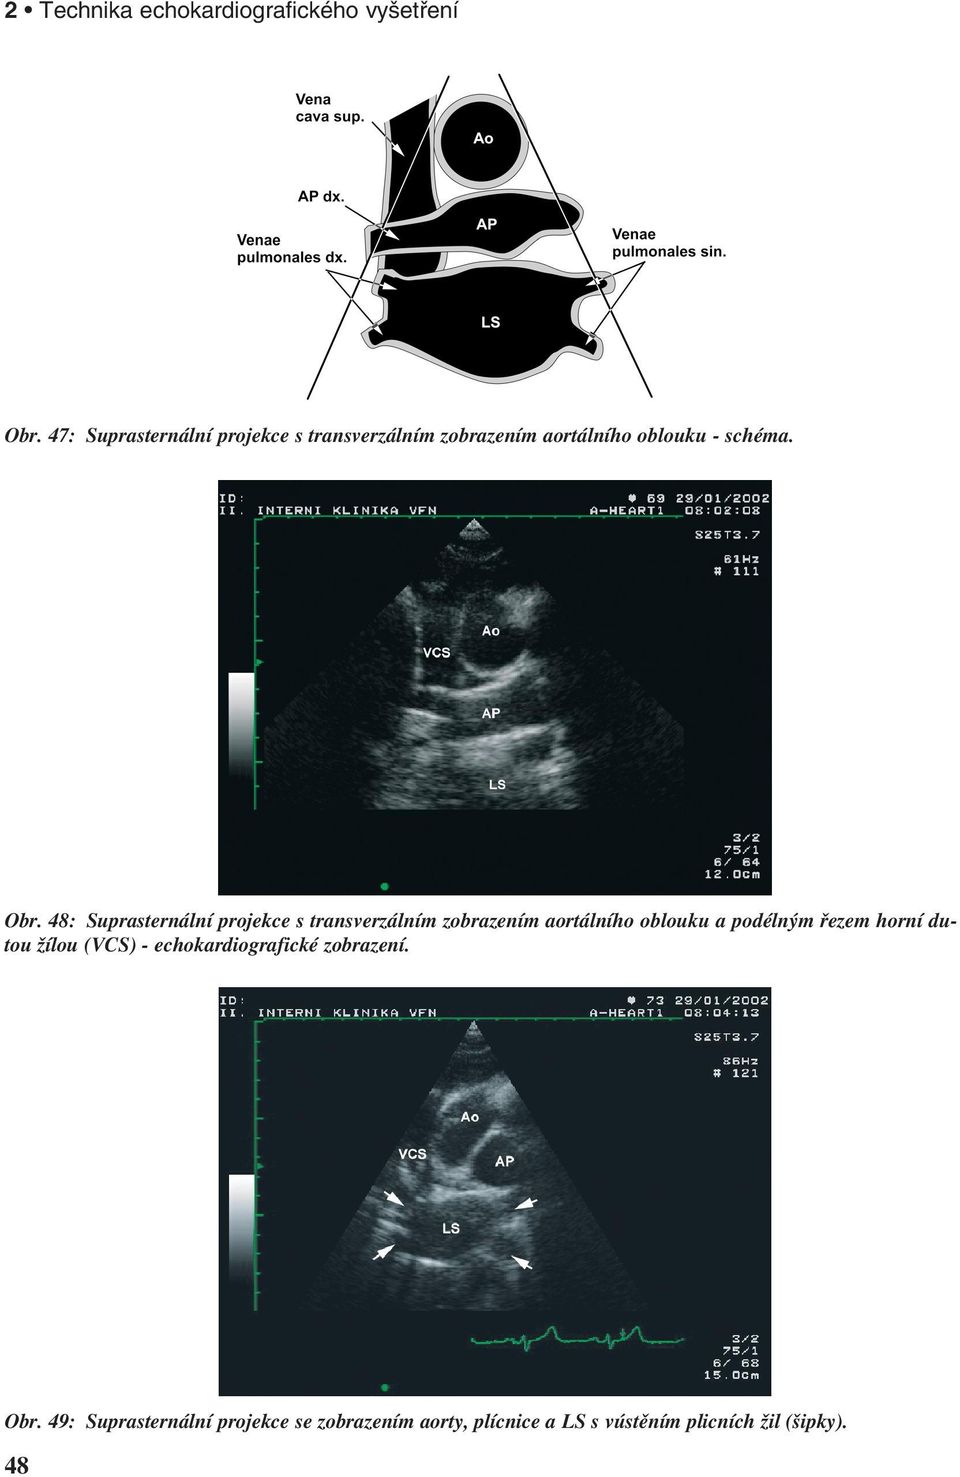 48: Suprasternální projekce s transverzálním zobrazením aortálního oblouku a podélným řezem